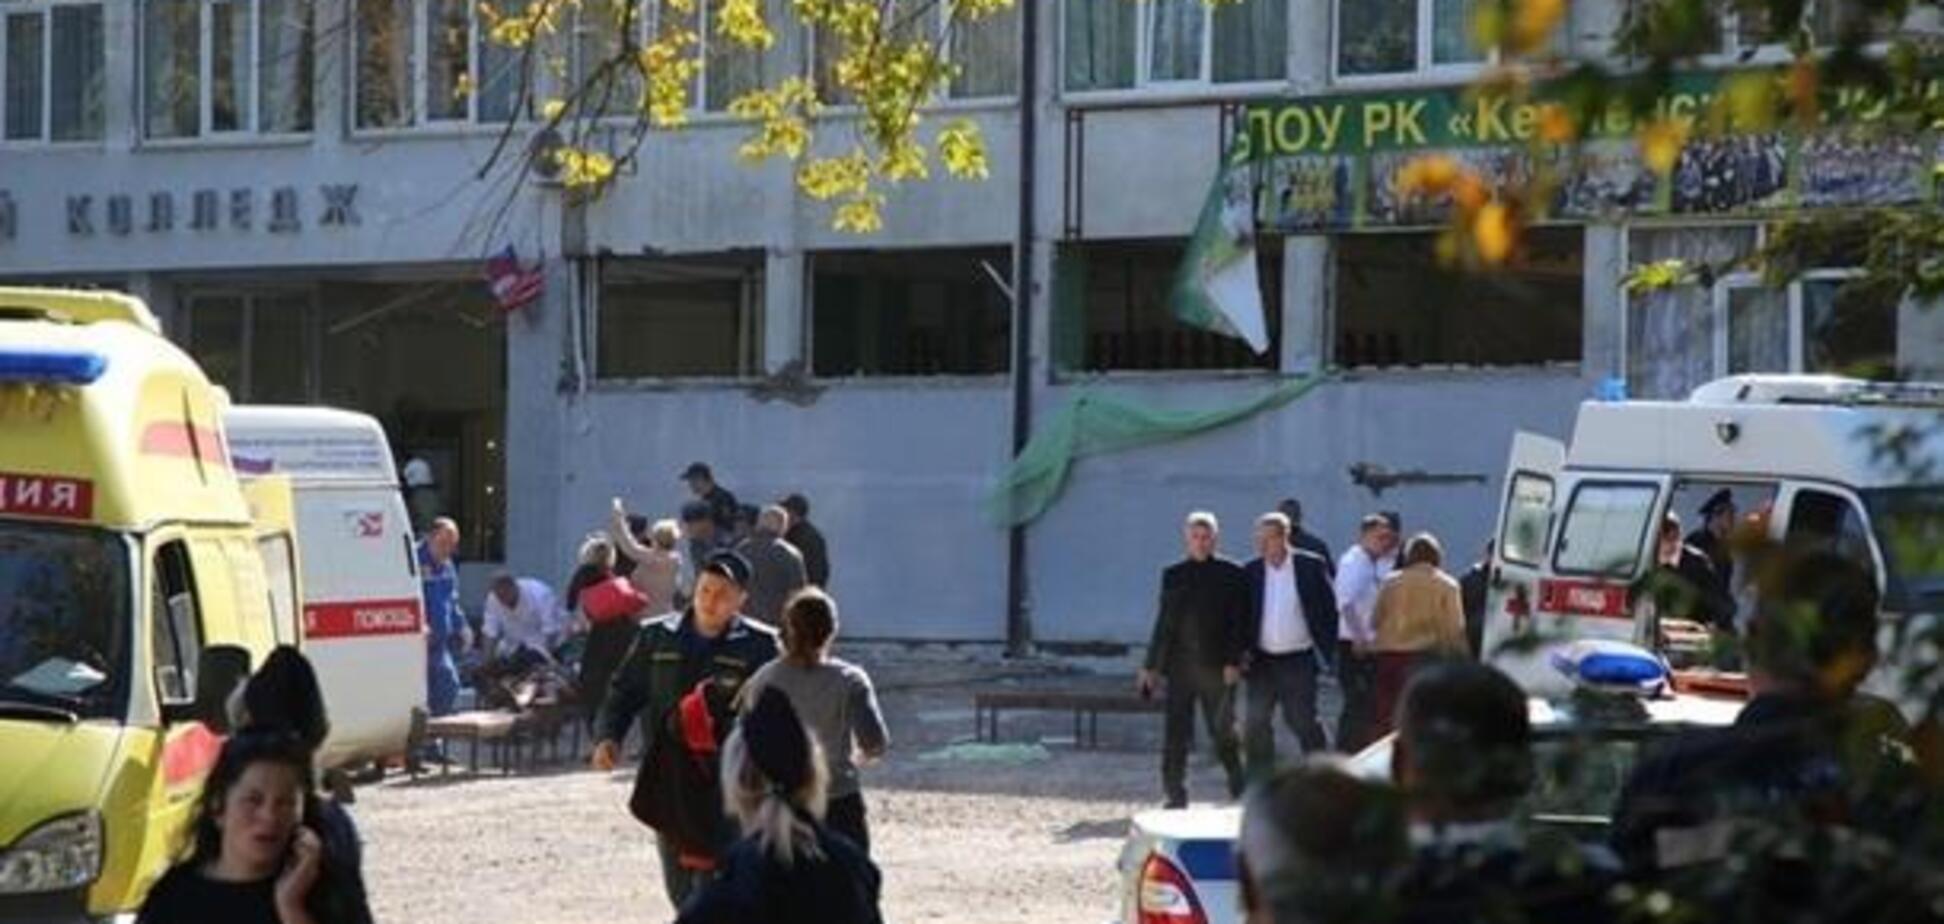 ''Терористи з ФСБ'': жителі Керчі ополчилися проти Росії після кривавої бійні